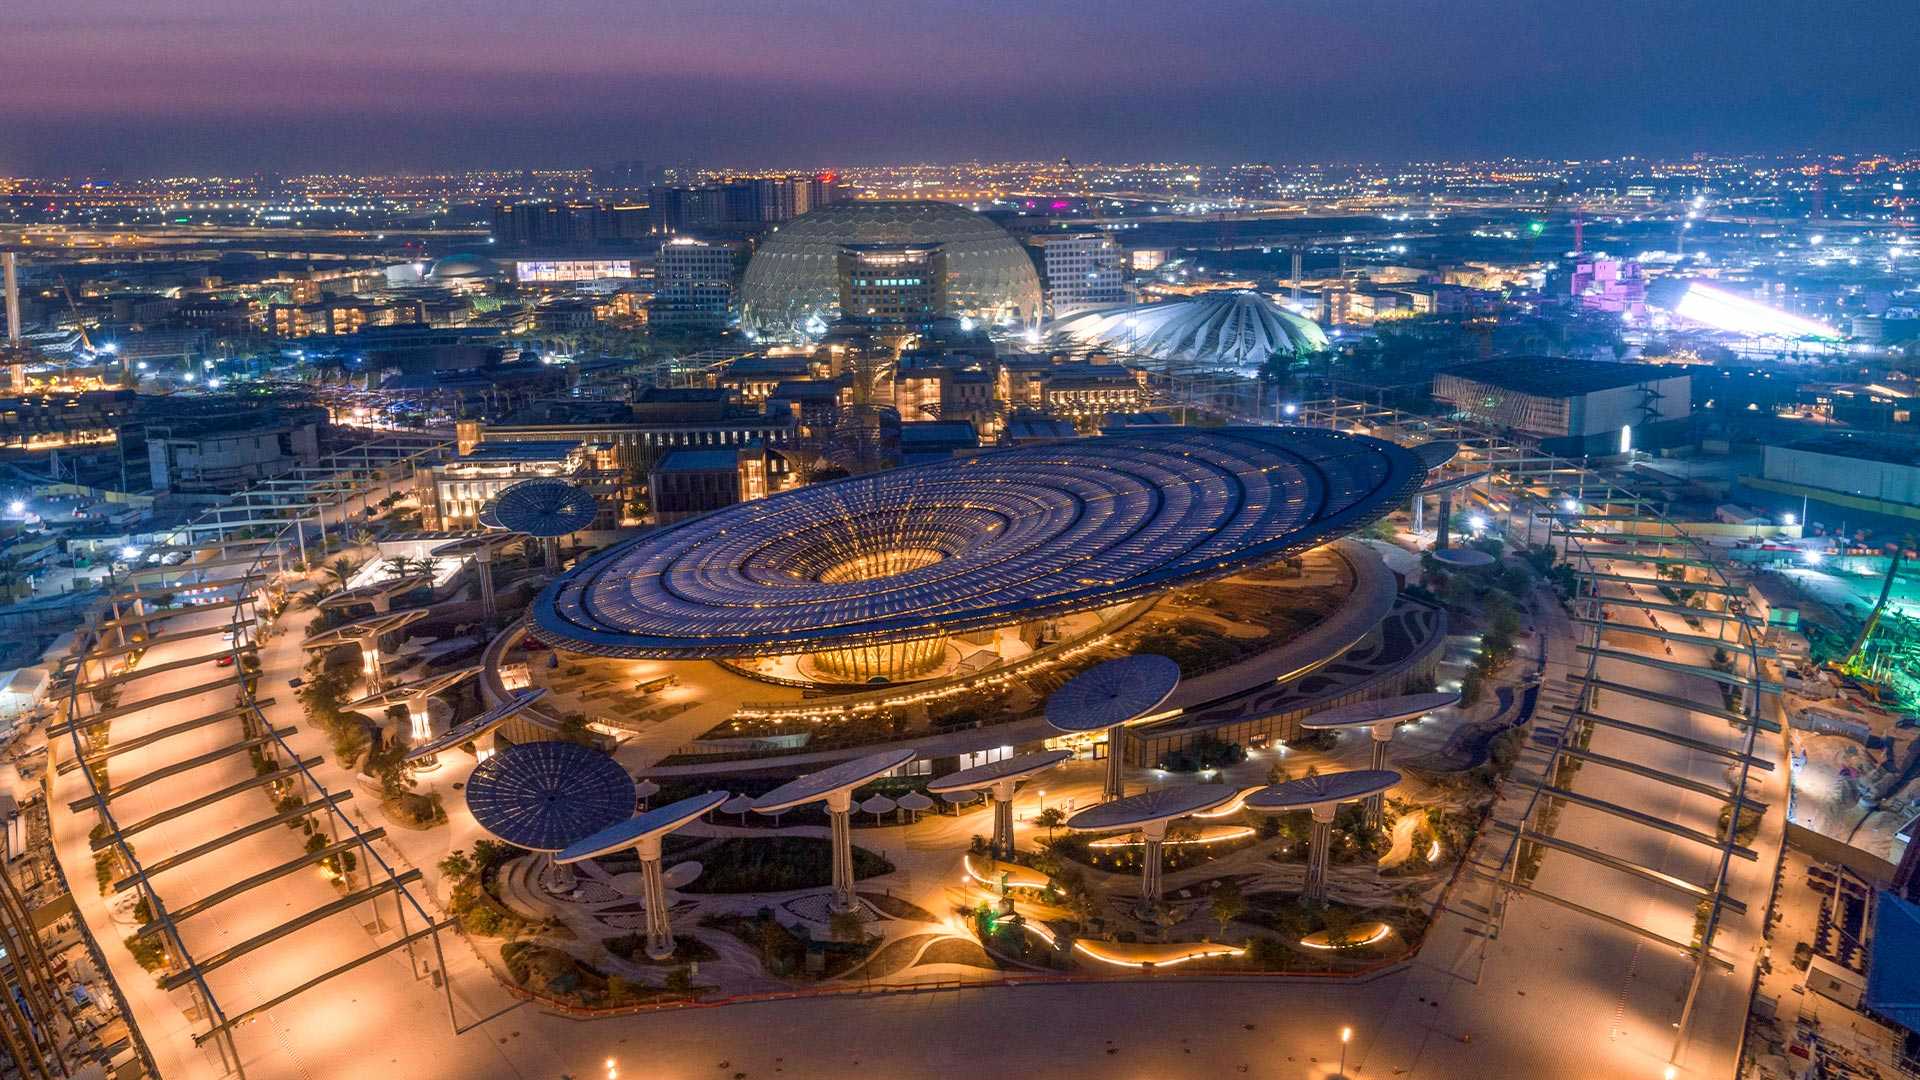 إكسبو دبي 2020